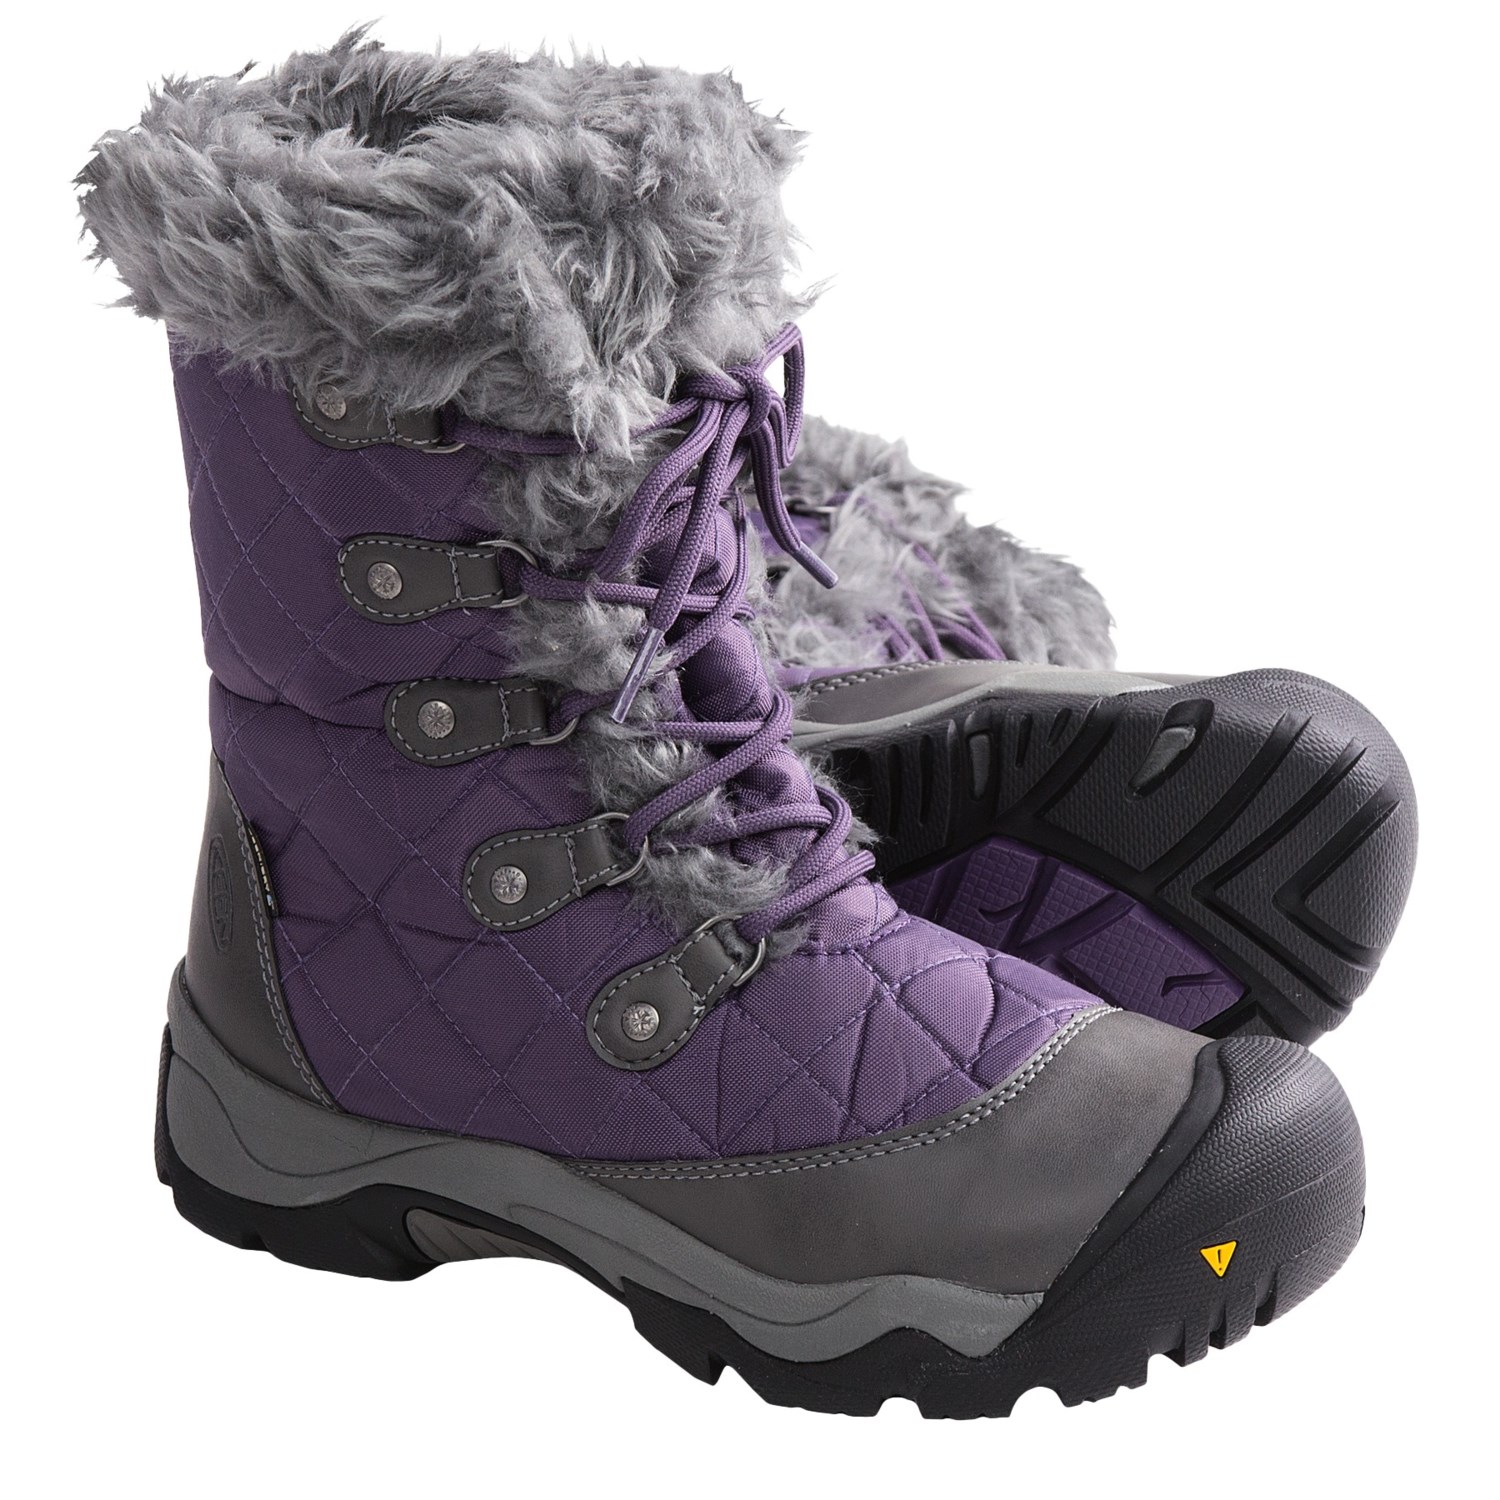 Keen Sunriver High Winter Boots (For Women) 6167G - Save 30%